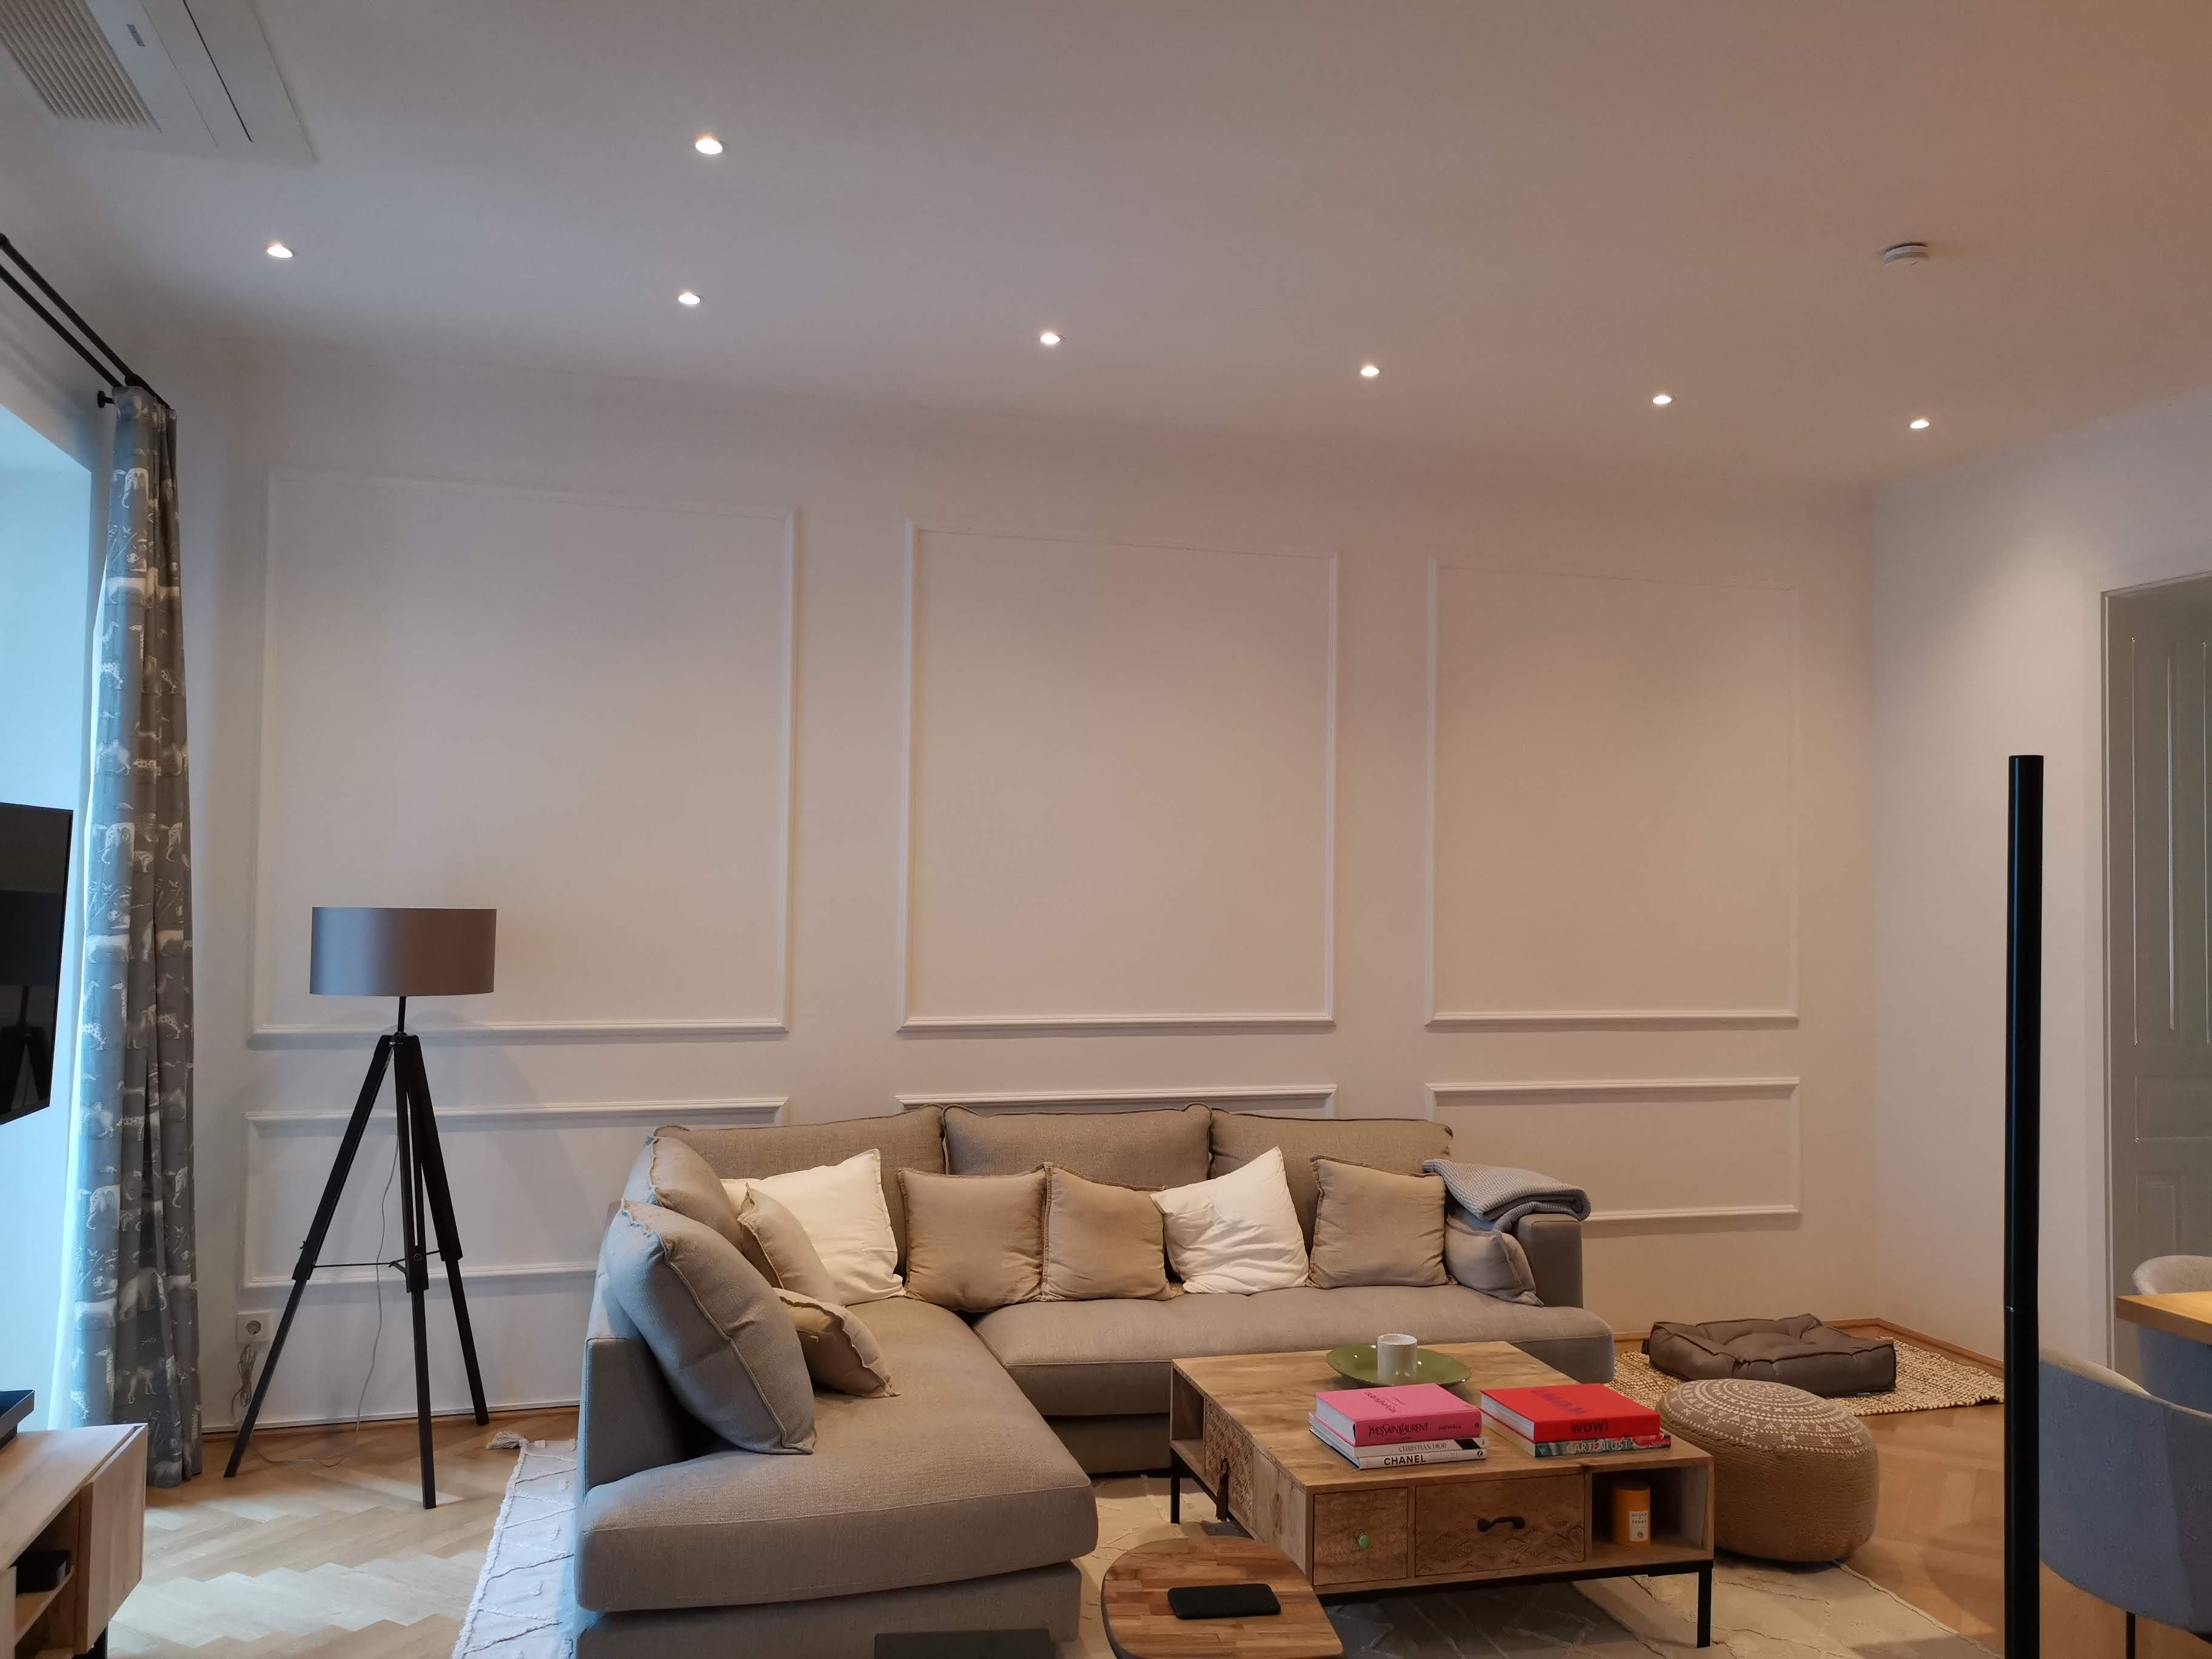 Innenansicht eines weiß gestrichenen Raumes mit großem Sofa, Stehlampe und Couchtisch